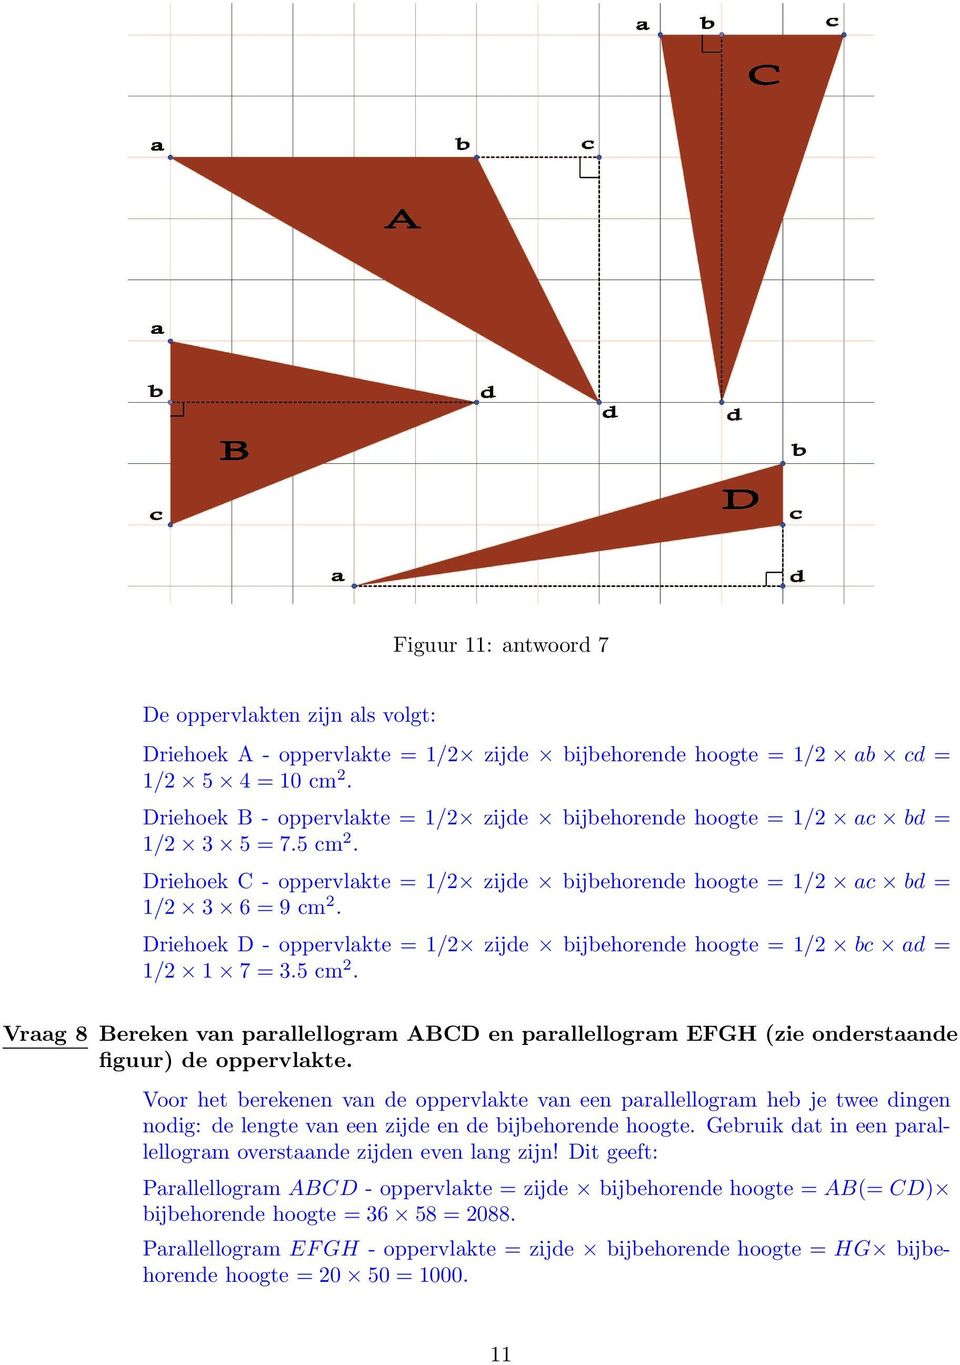 Driehoek D - oppervlakte = 1/2 zijde bijbehorende hoogte = 1/2 bc ad = 1/2 1 7 = 3.5 cm2. Vraag 8 Bereken van parallellogram ABCD en parallellogram EFGH (zie onderstaande figuur) de oppervlakte.